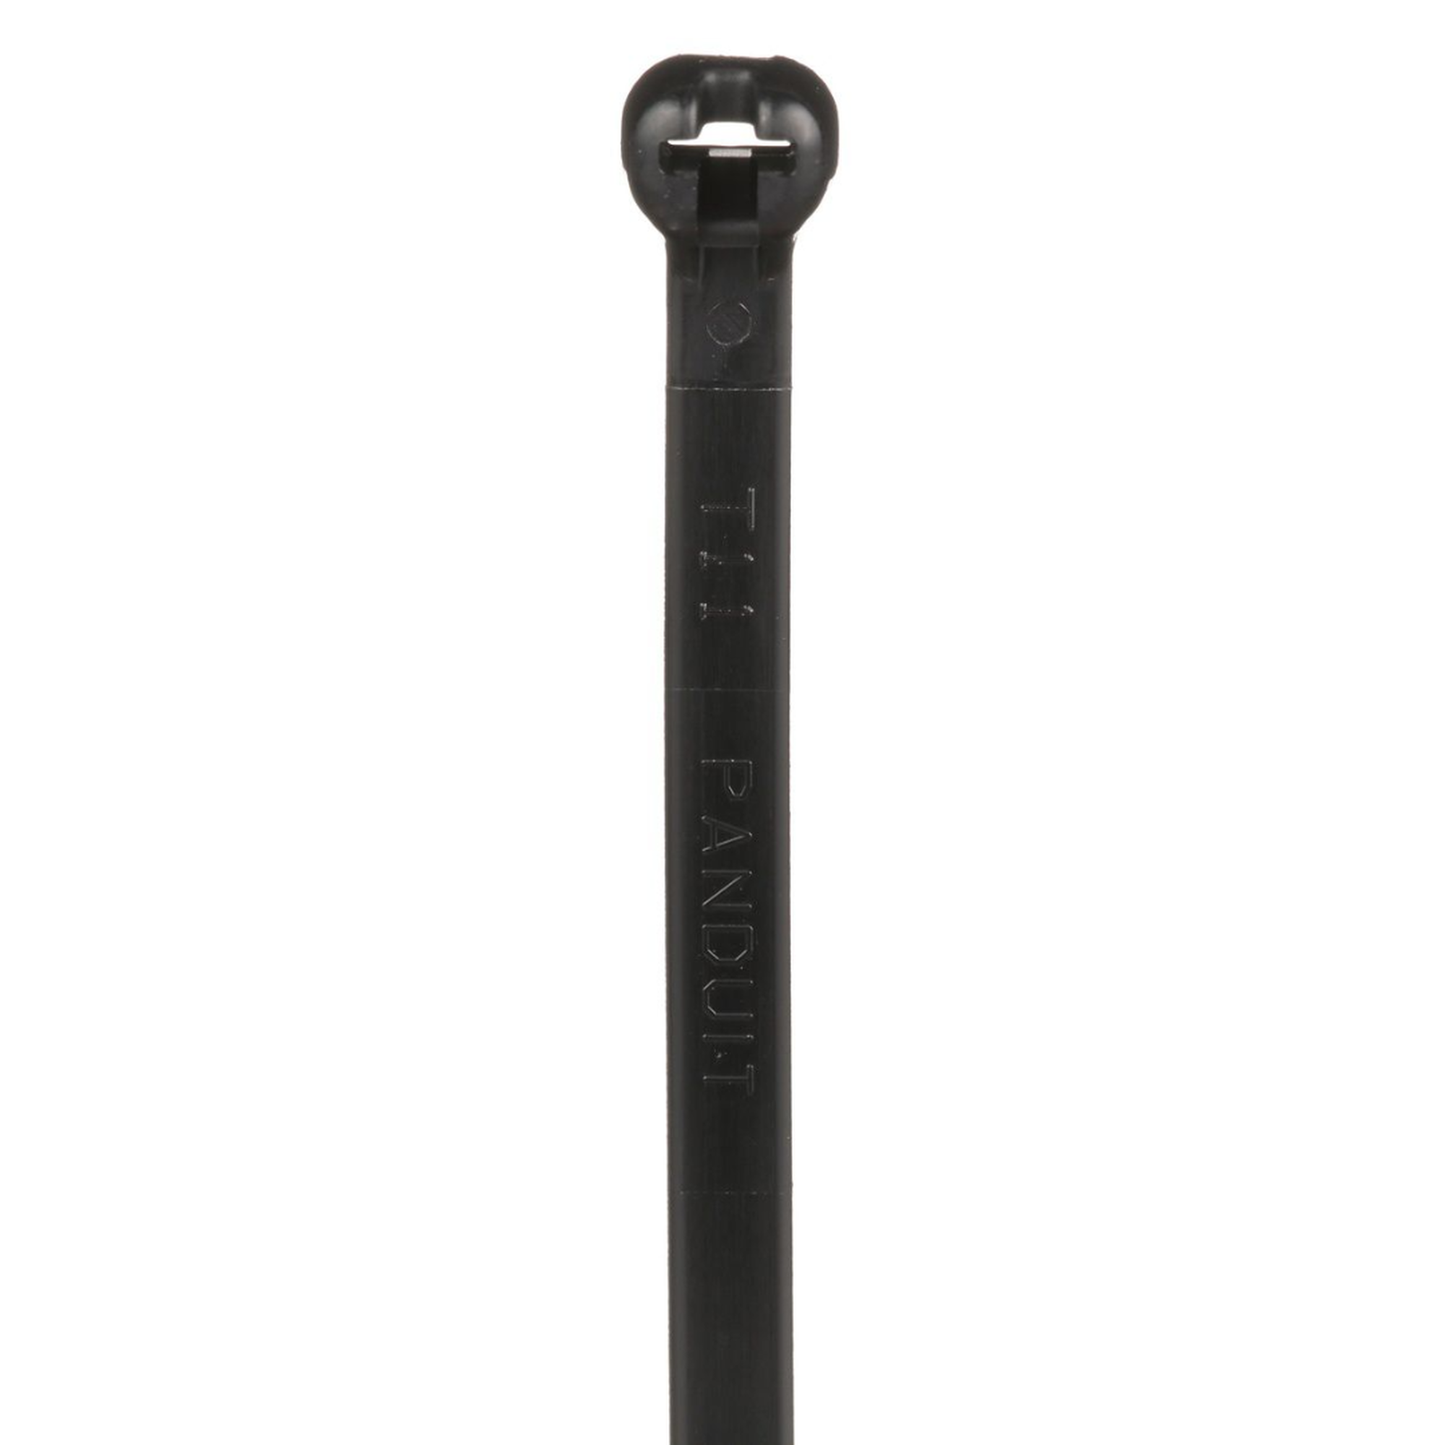 Cincho de Nylon 6.6 Dome-Top®, Con Lengüeta de Bloqueo de Acero Inoxidable, 203 mm de largo, Color Negro, Exterior Resistente a Rayos UV, Paquete de 1000pz